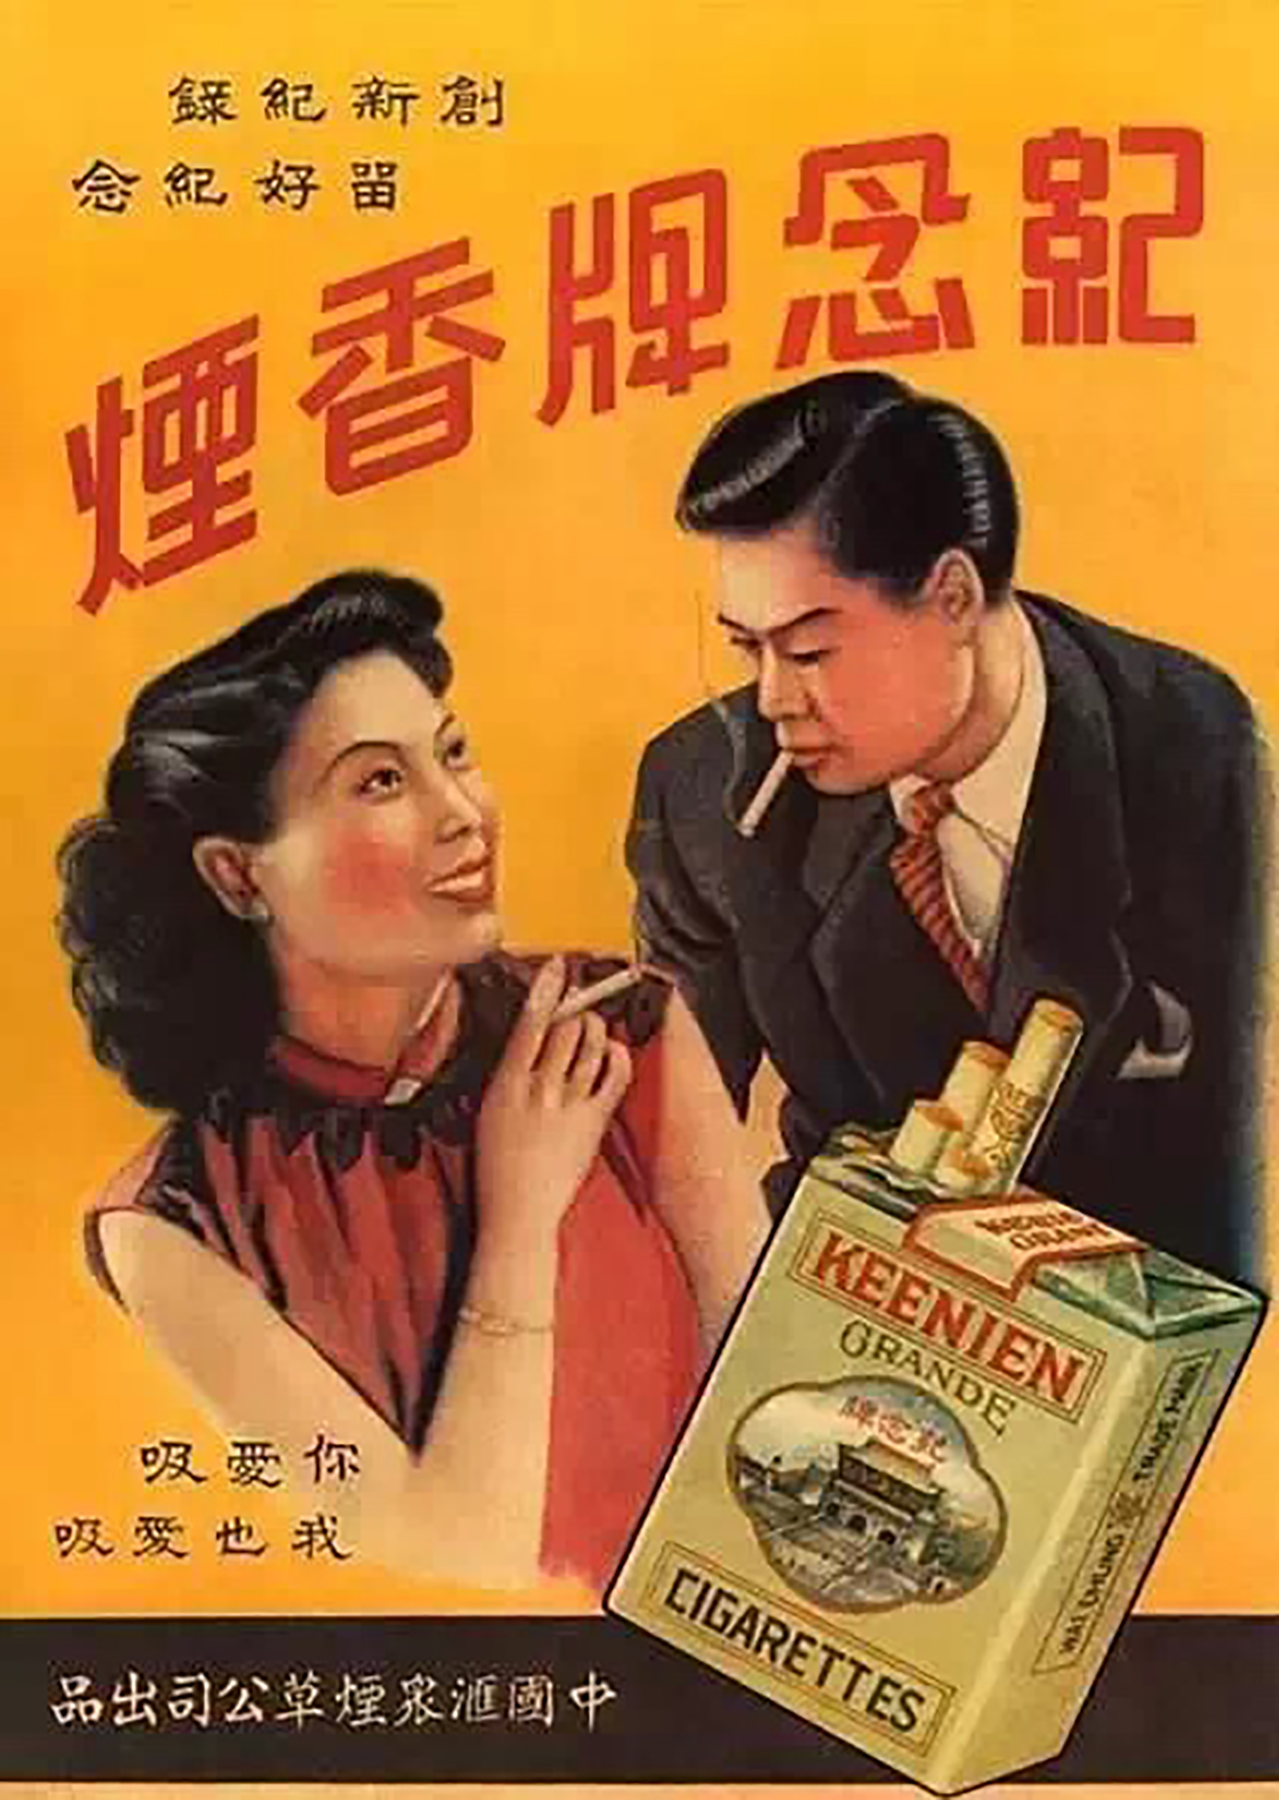 100年前的香烟广告图片,给人一股厚重的历史气息